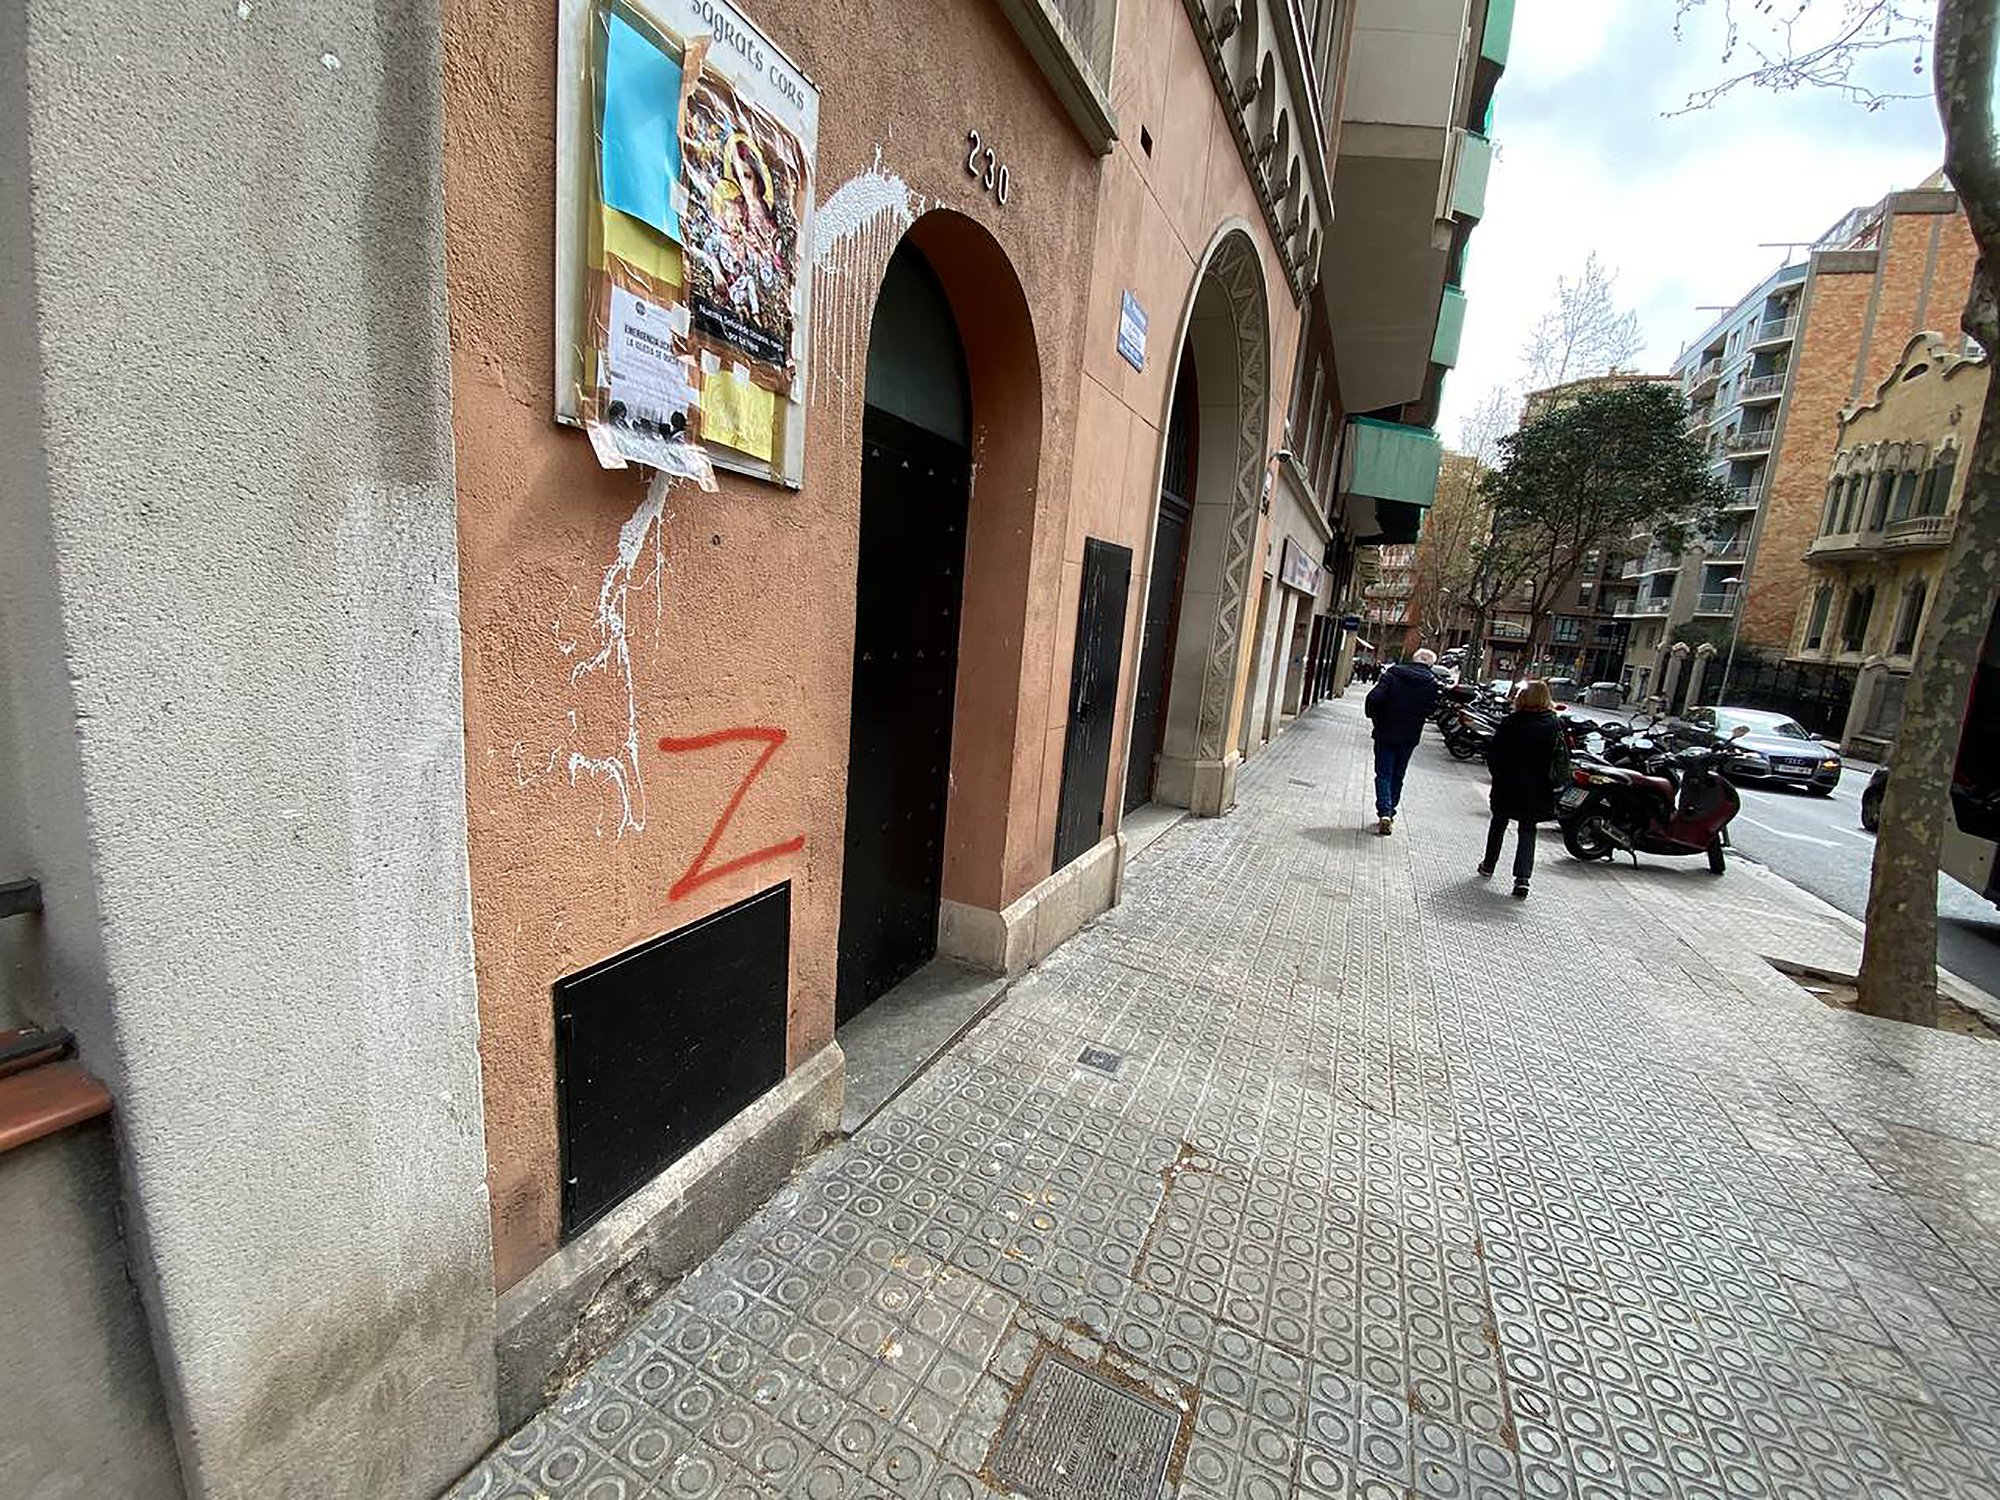 Pintades prorusses a Catalunya: els Mossos investiguen l'aparició de la 'Z' a Barcelona